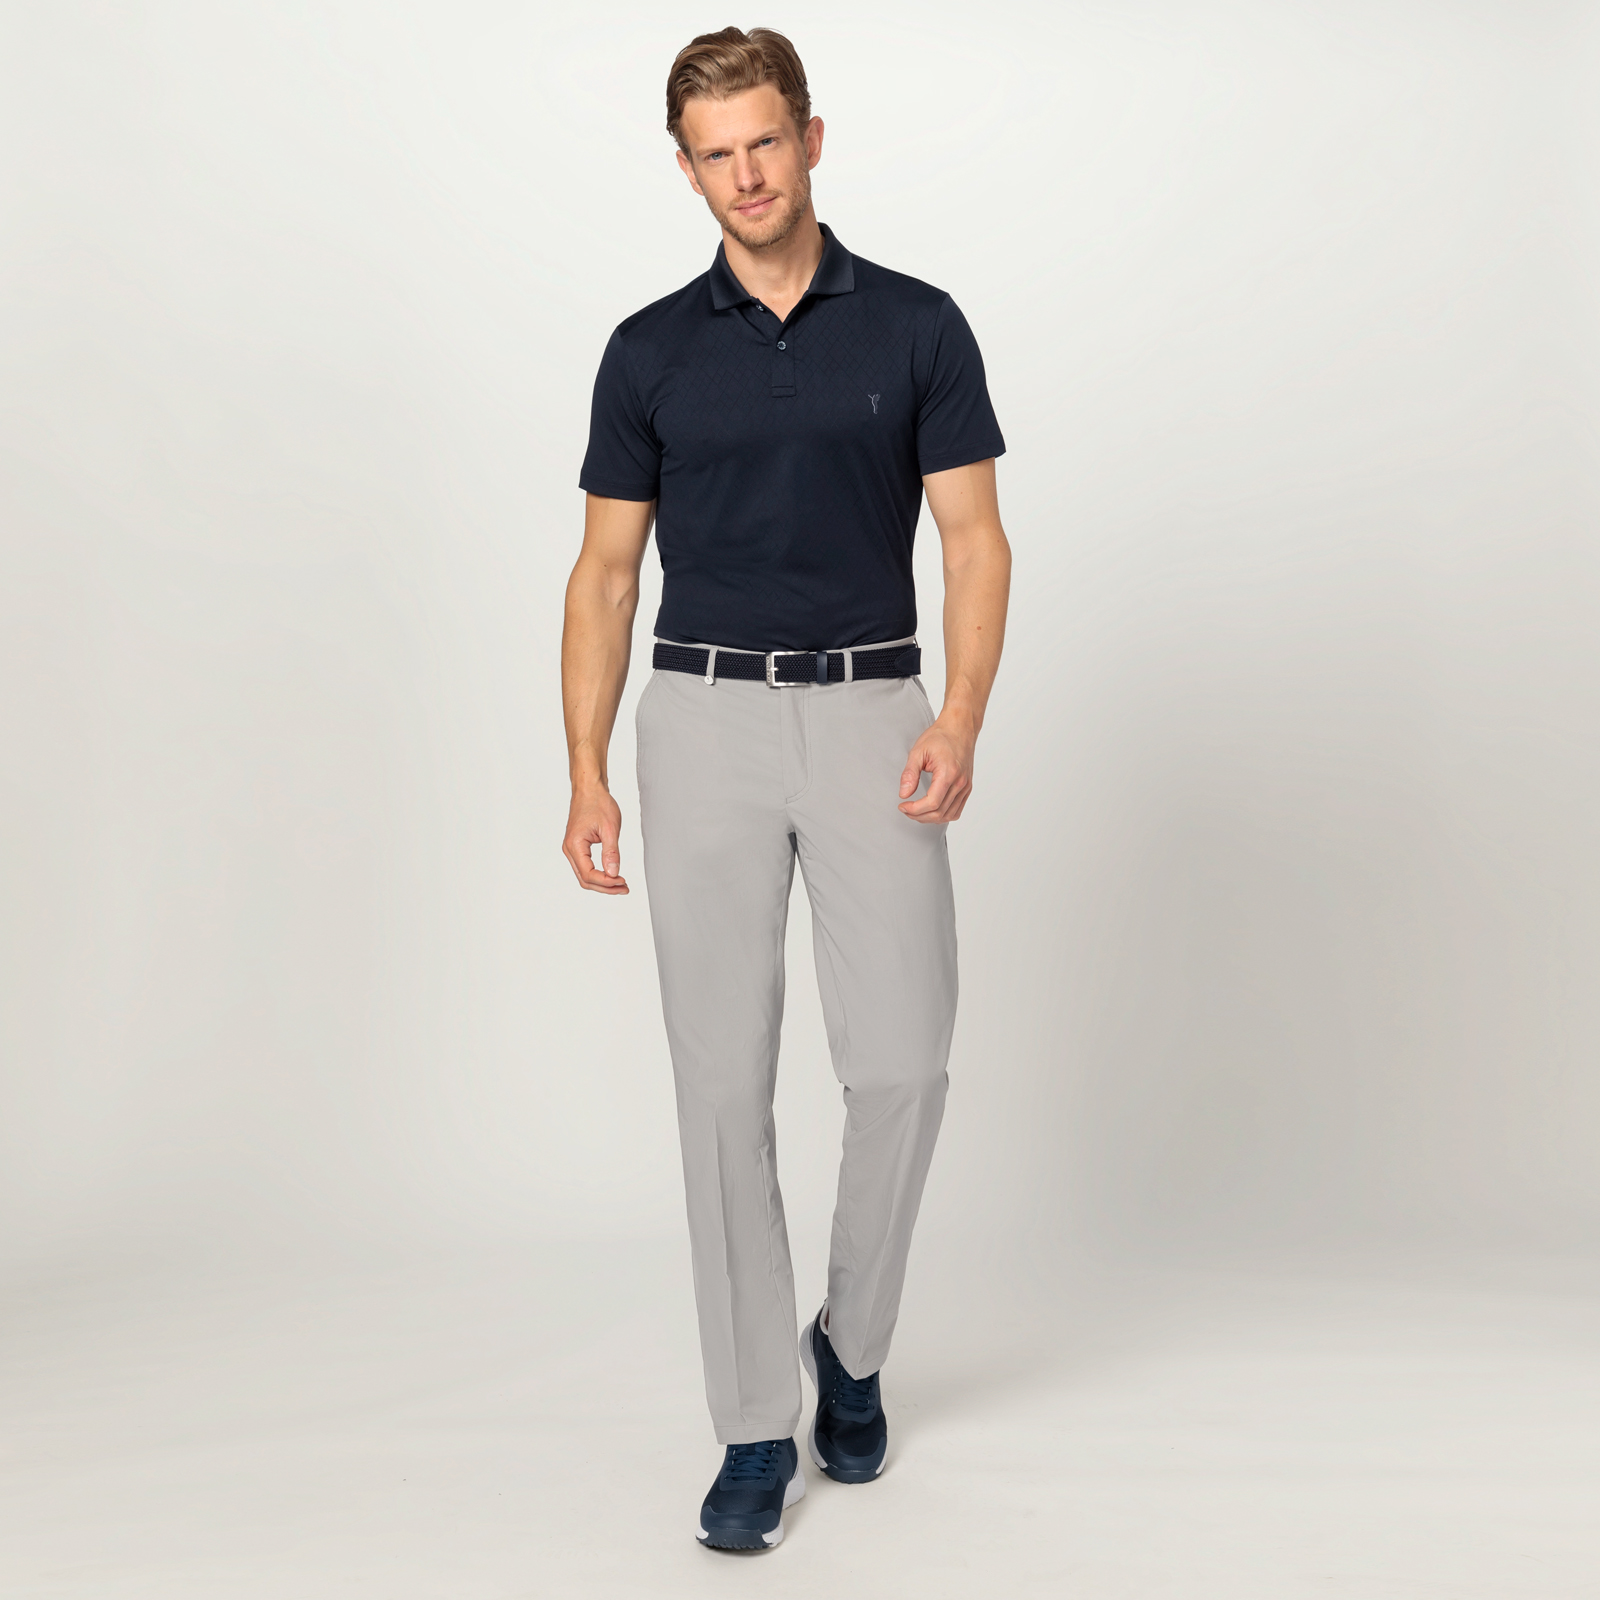 Pantalon de golf pratique et polyvalent pour hommes